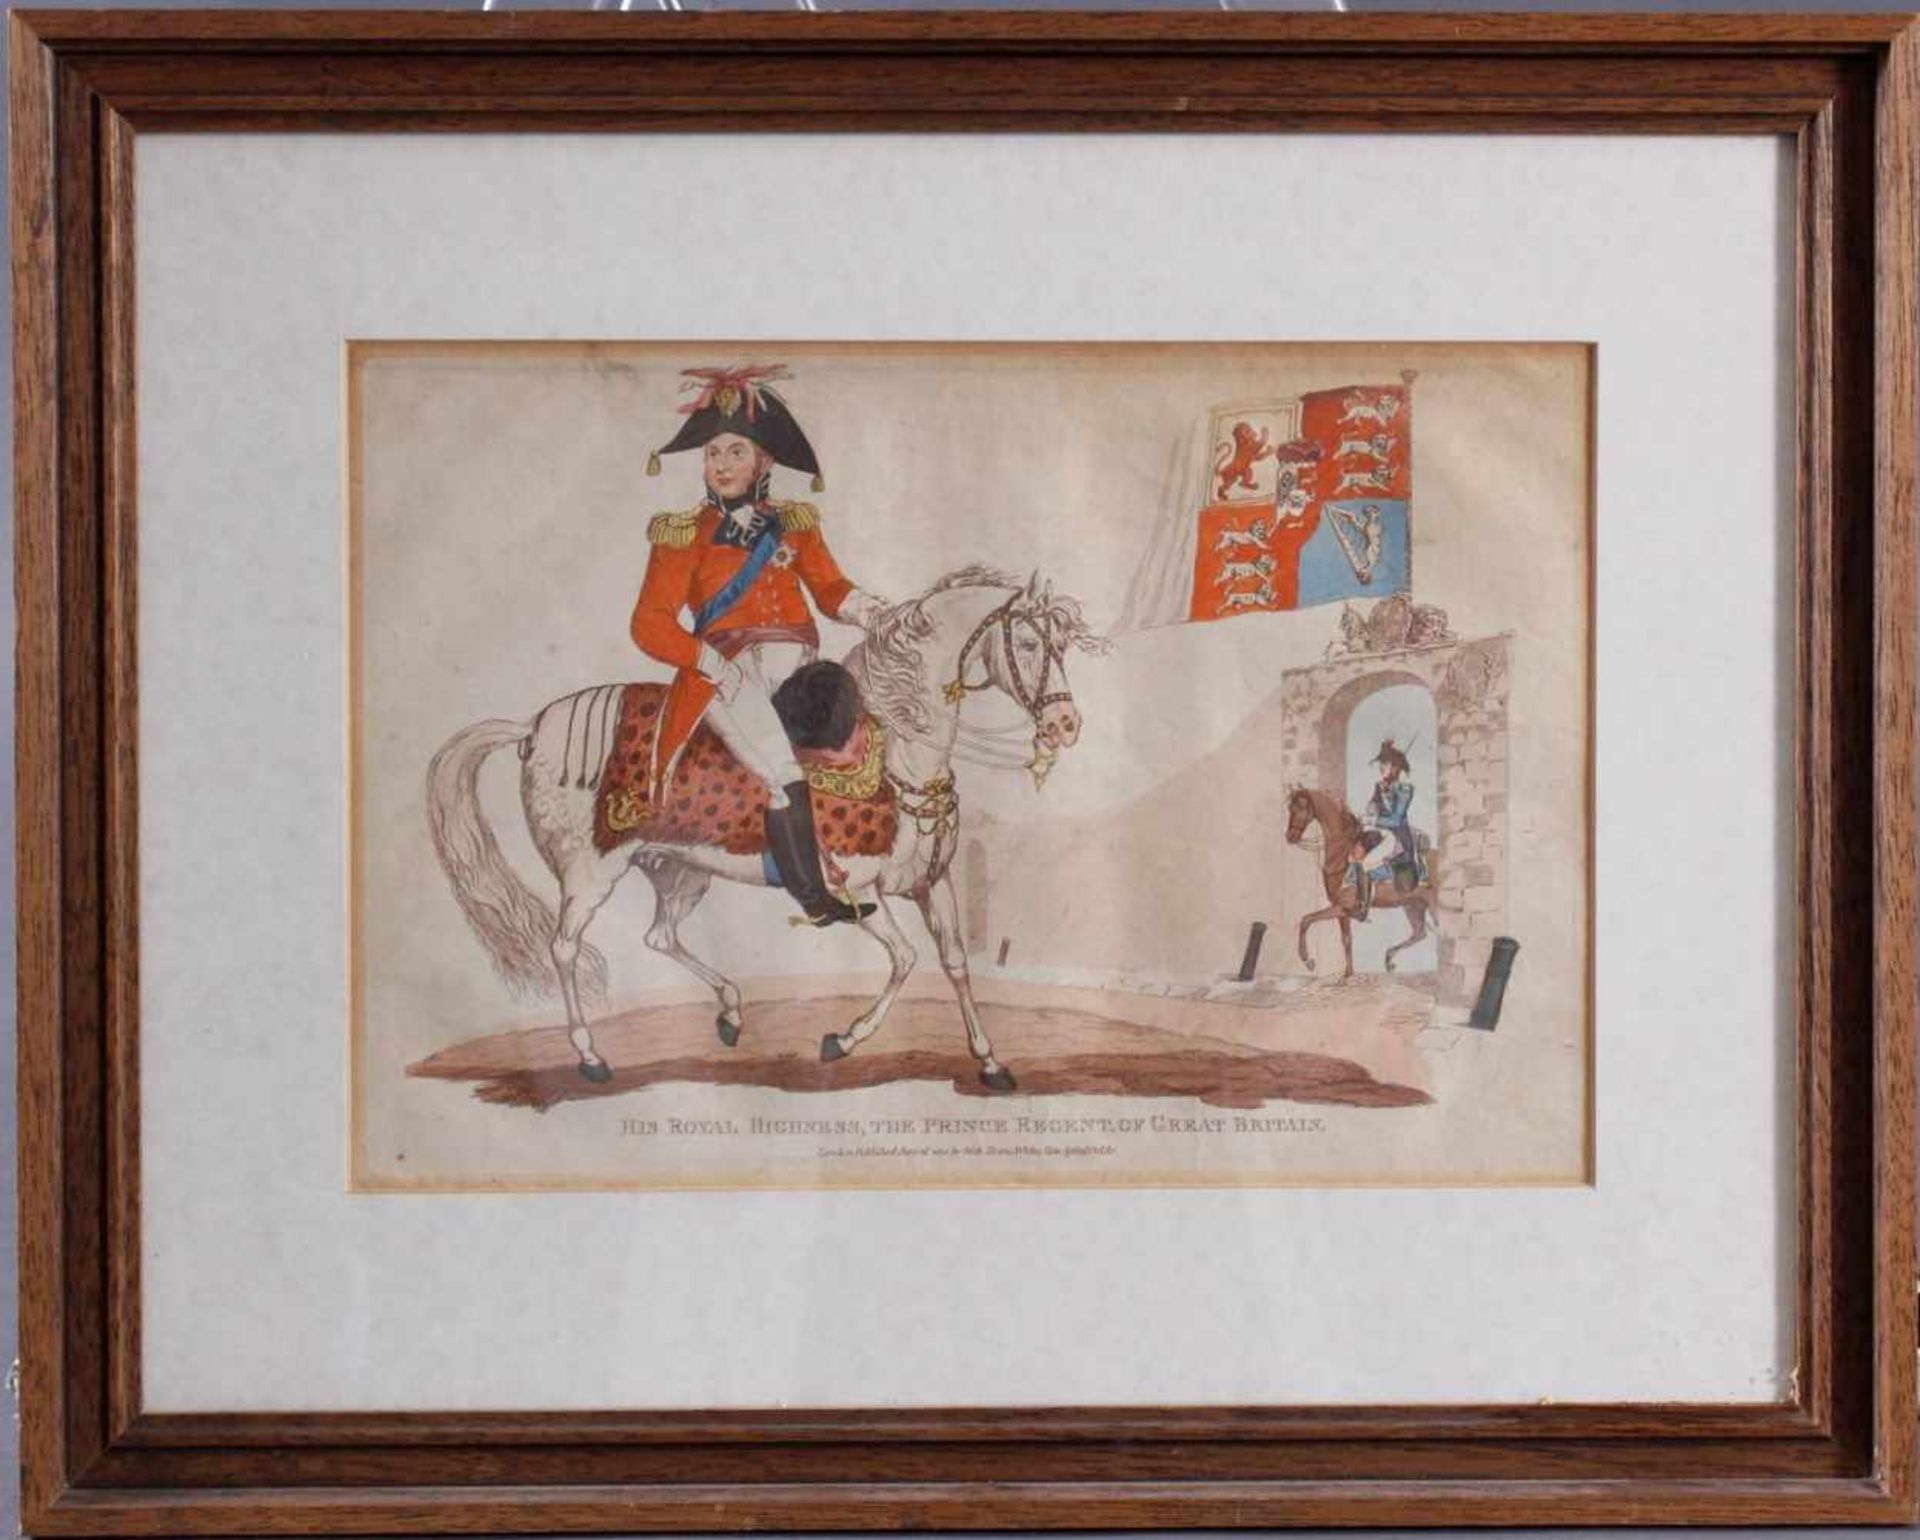 Kupferstich von 1815, Hus Royal Highness, The Prince Regent Of Great BritainVon Hand koloriert,